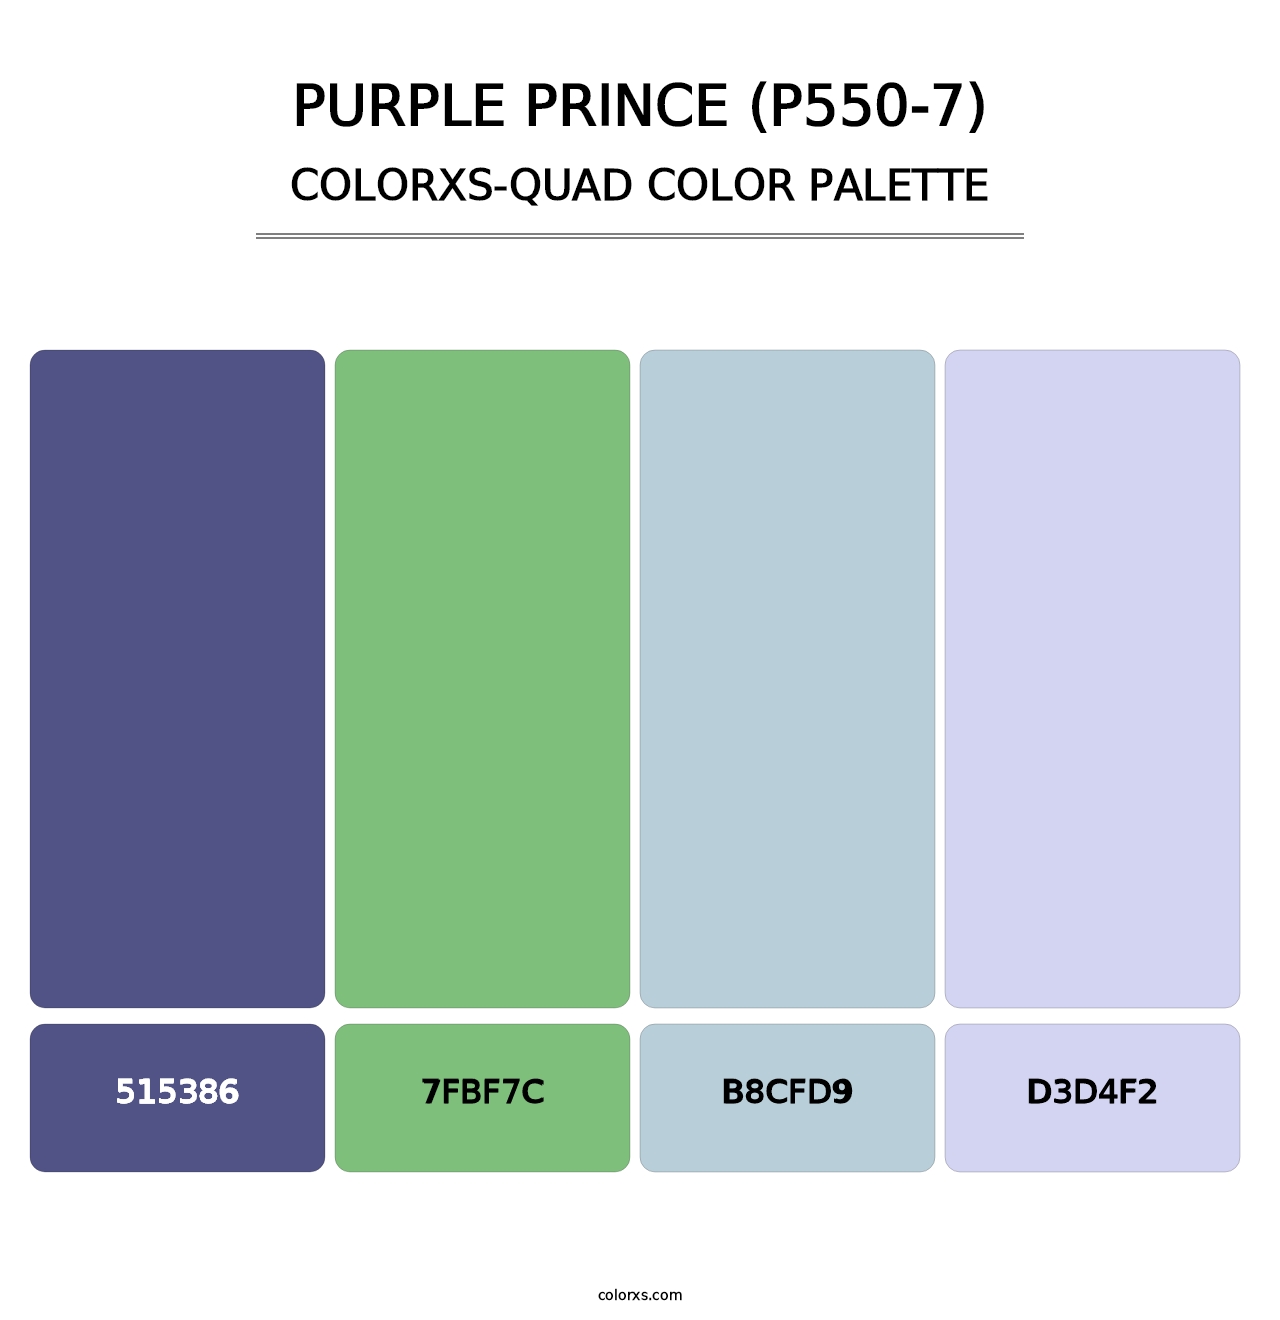 Purple Prince (P550-7) - Colorxs Quad Palette